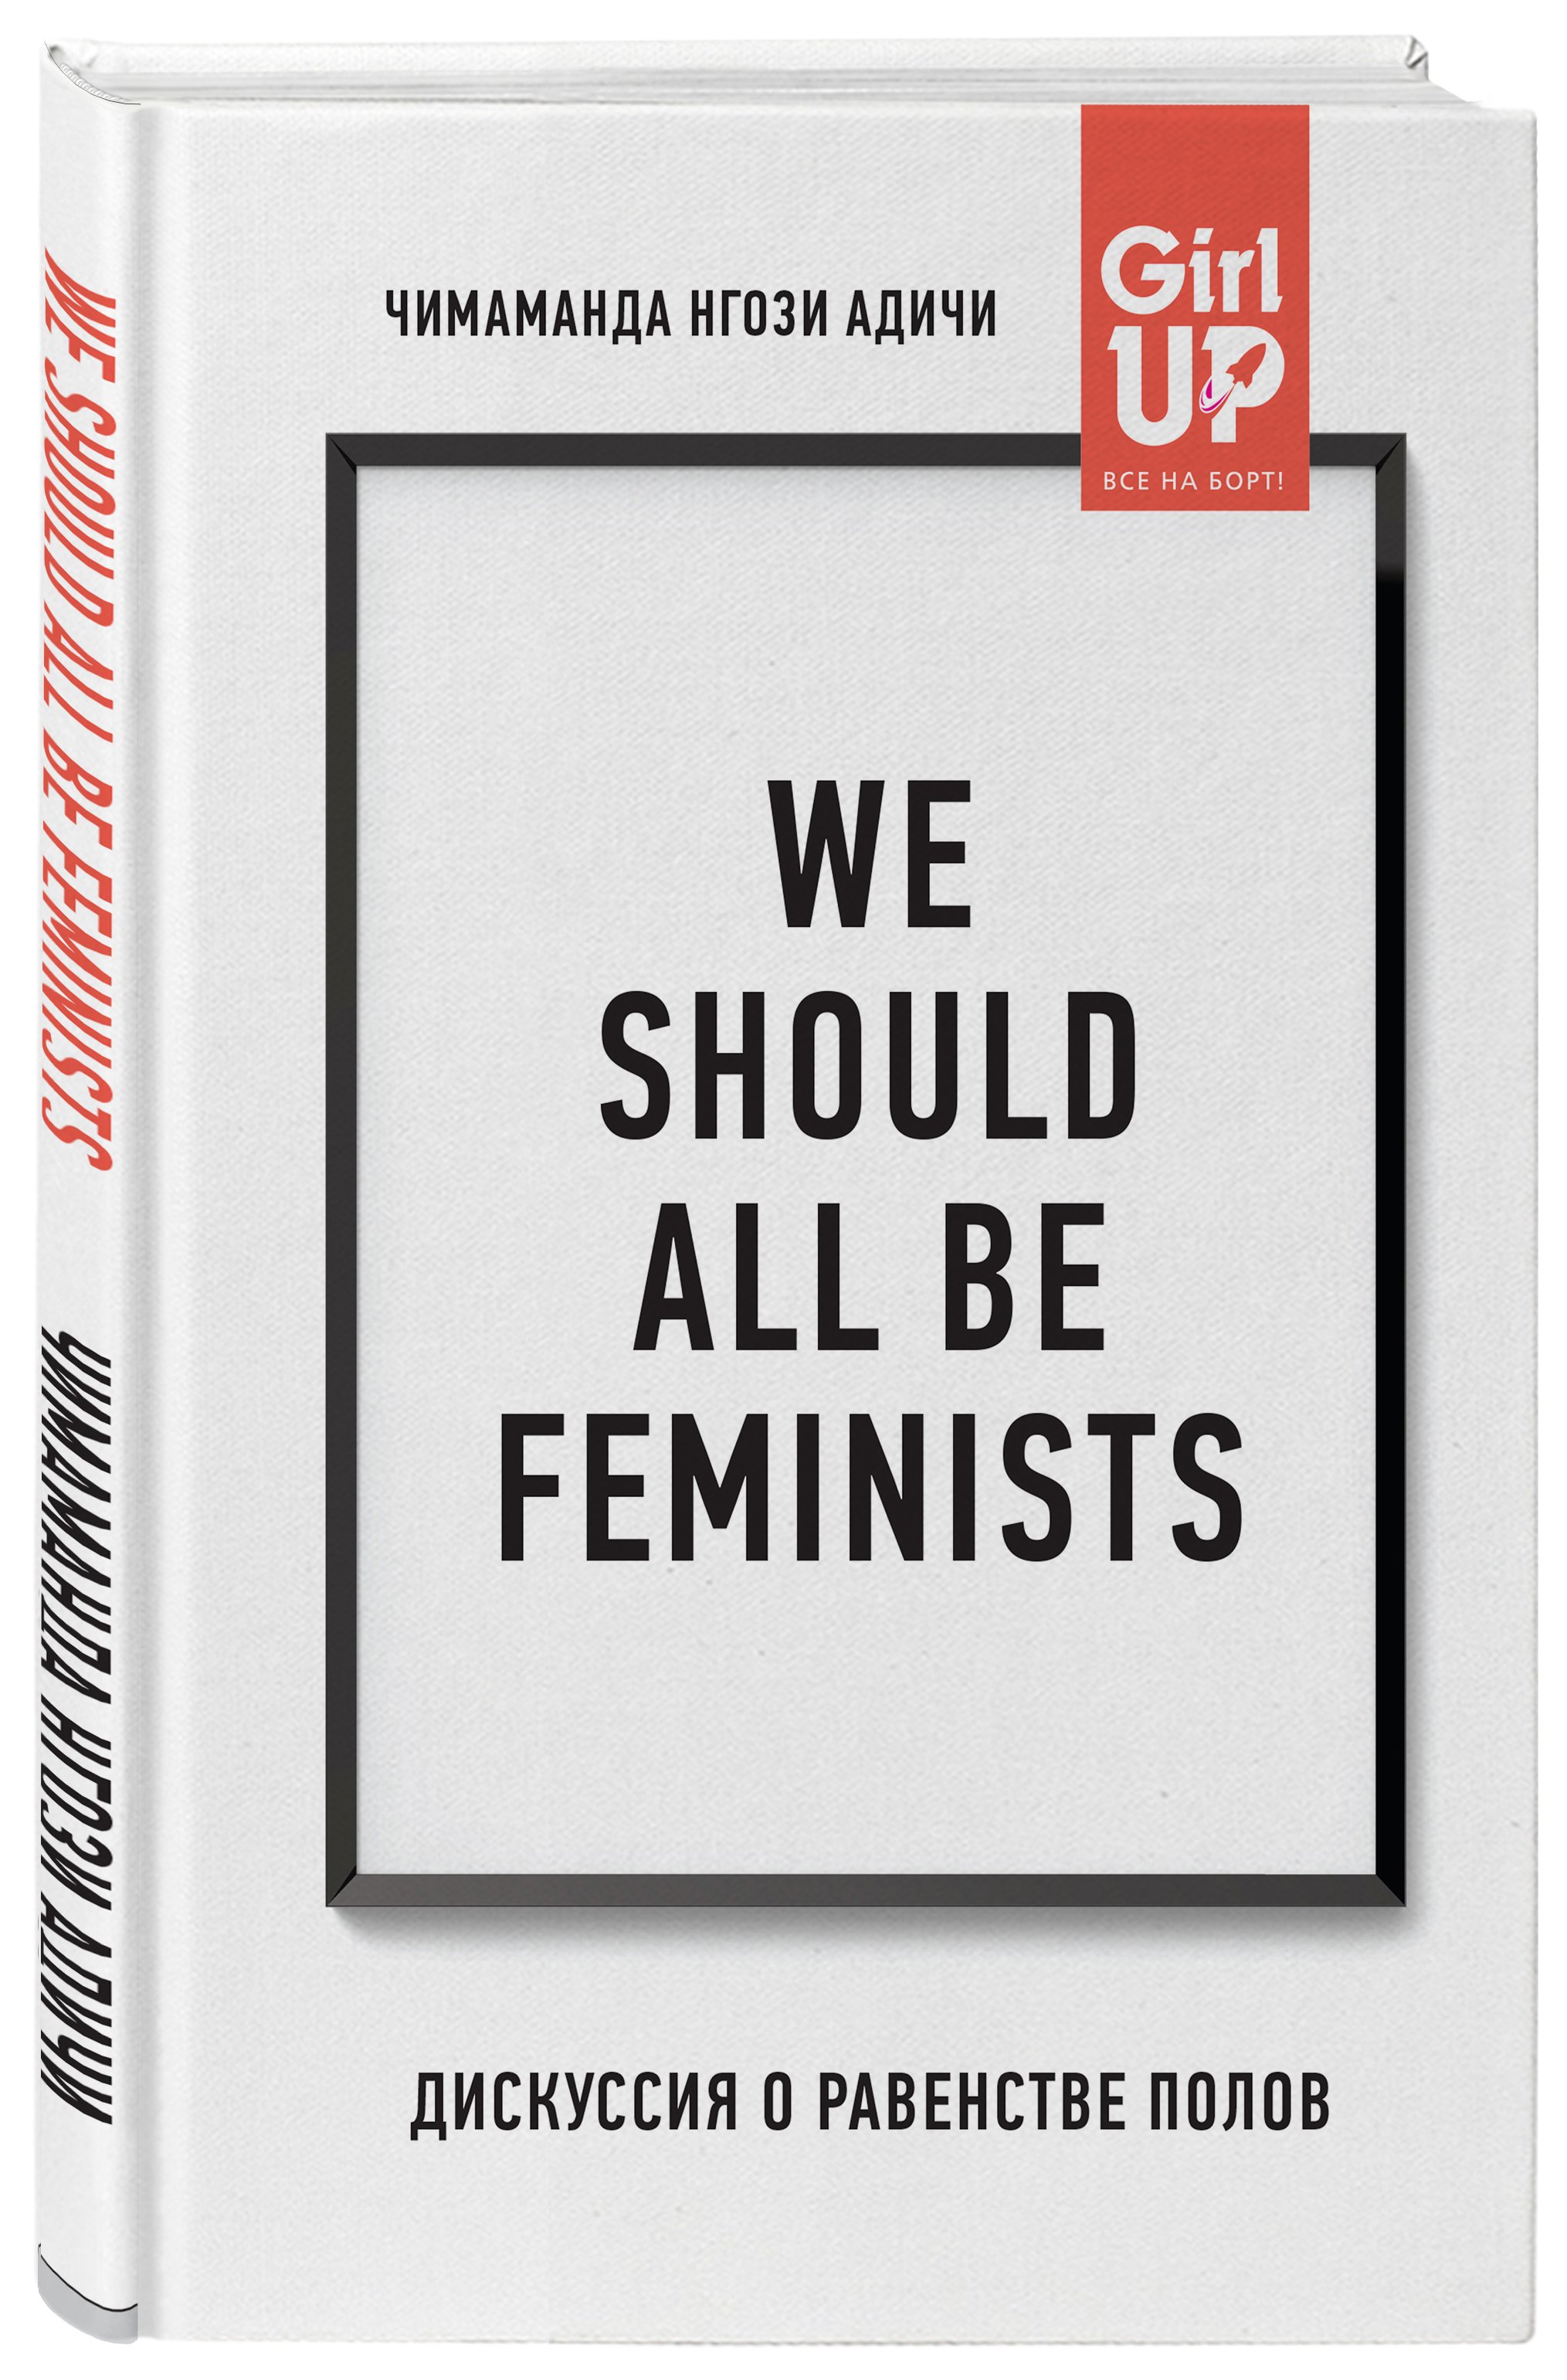 Zakazat.ru: We should all be feminists. Дискуссия о равенстве полов. Адичи Нгози Чимаманда